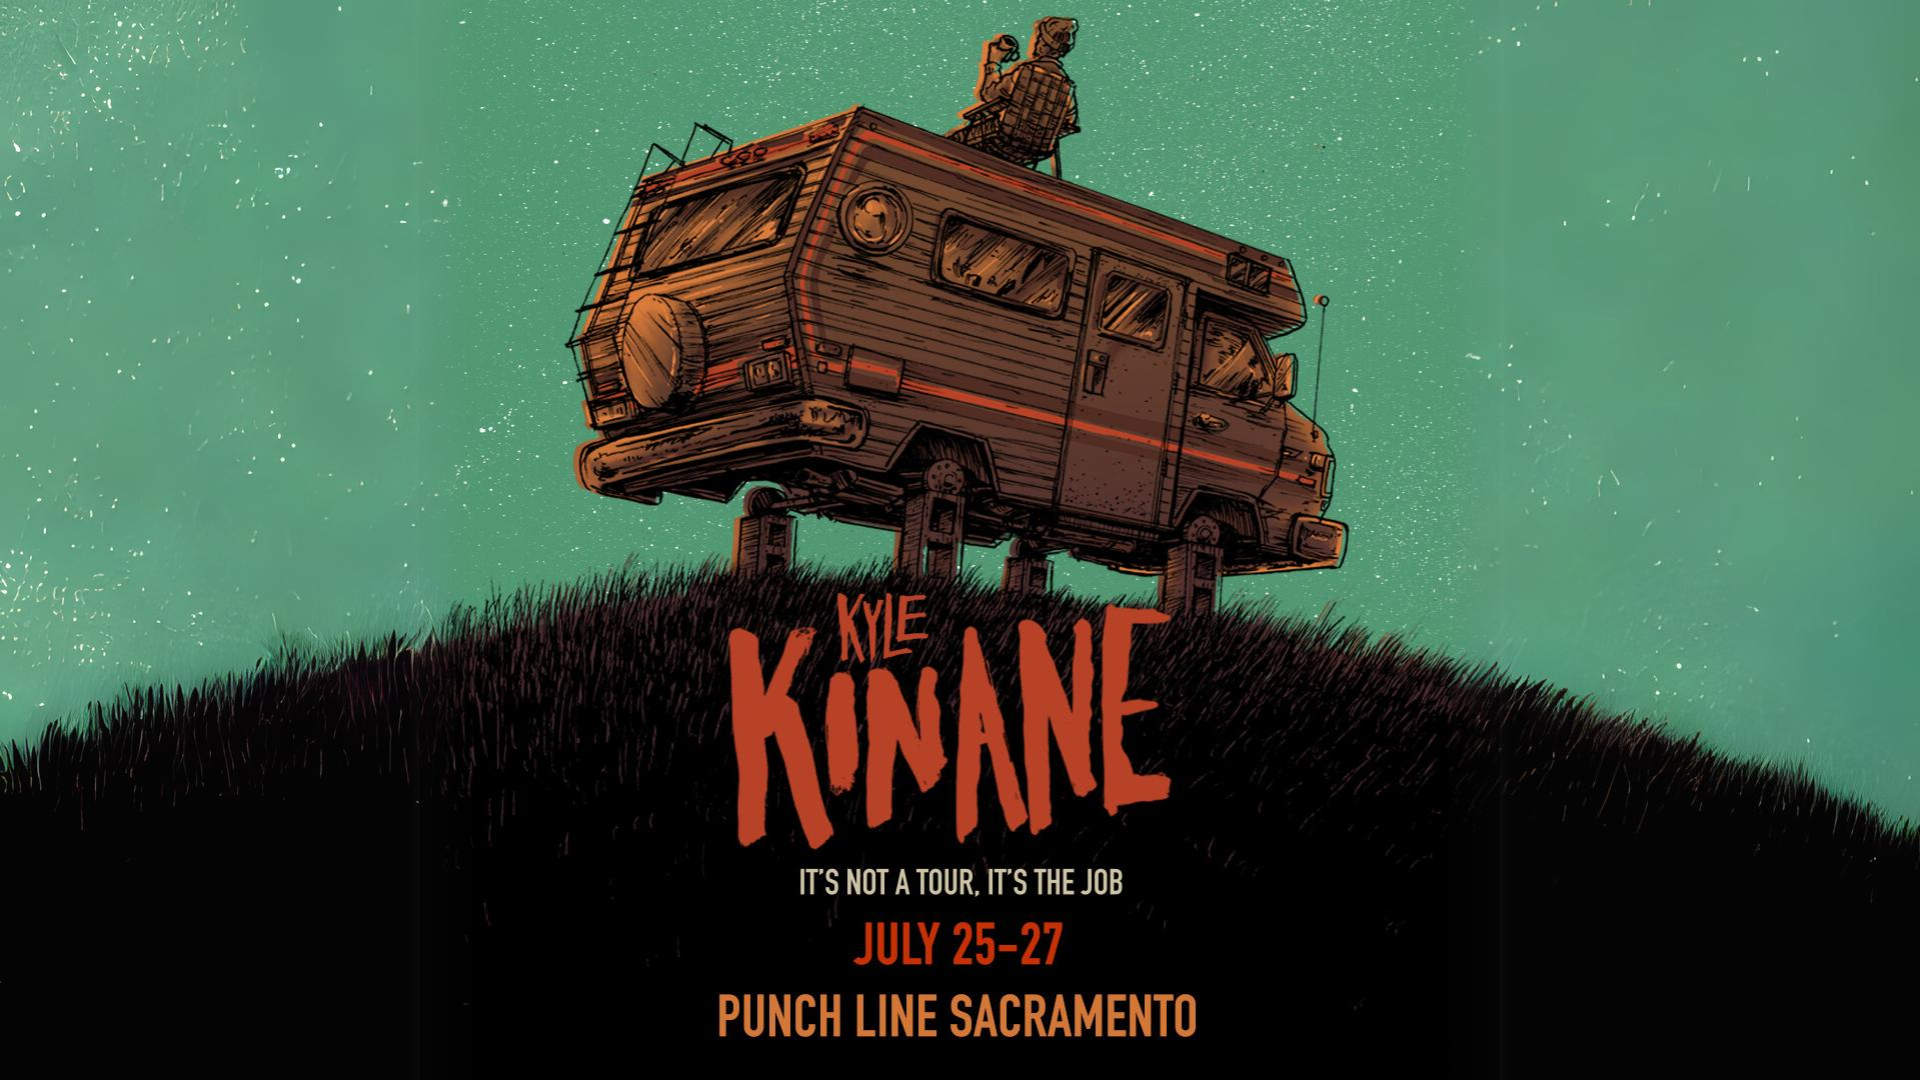 Kyle Kinane: It's Not a Tour, It's The Job